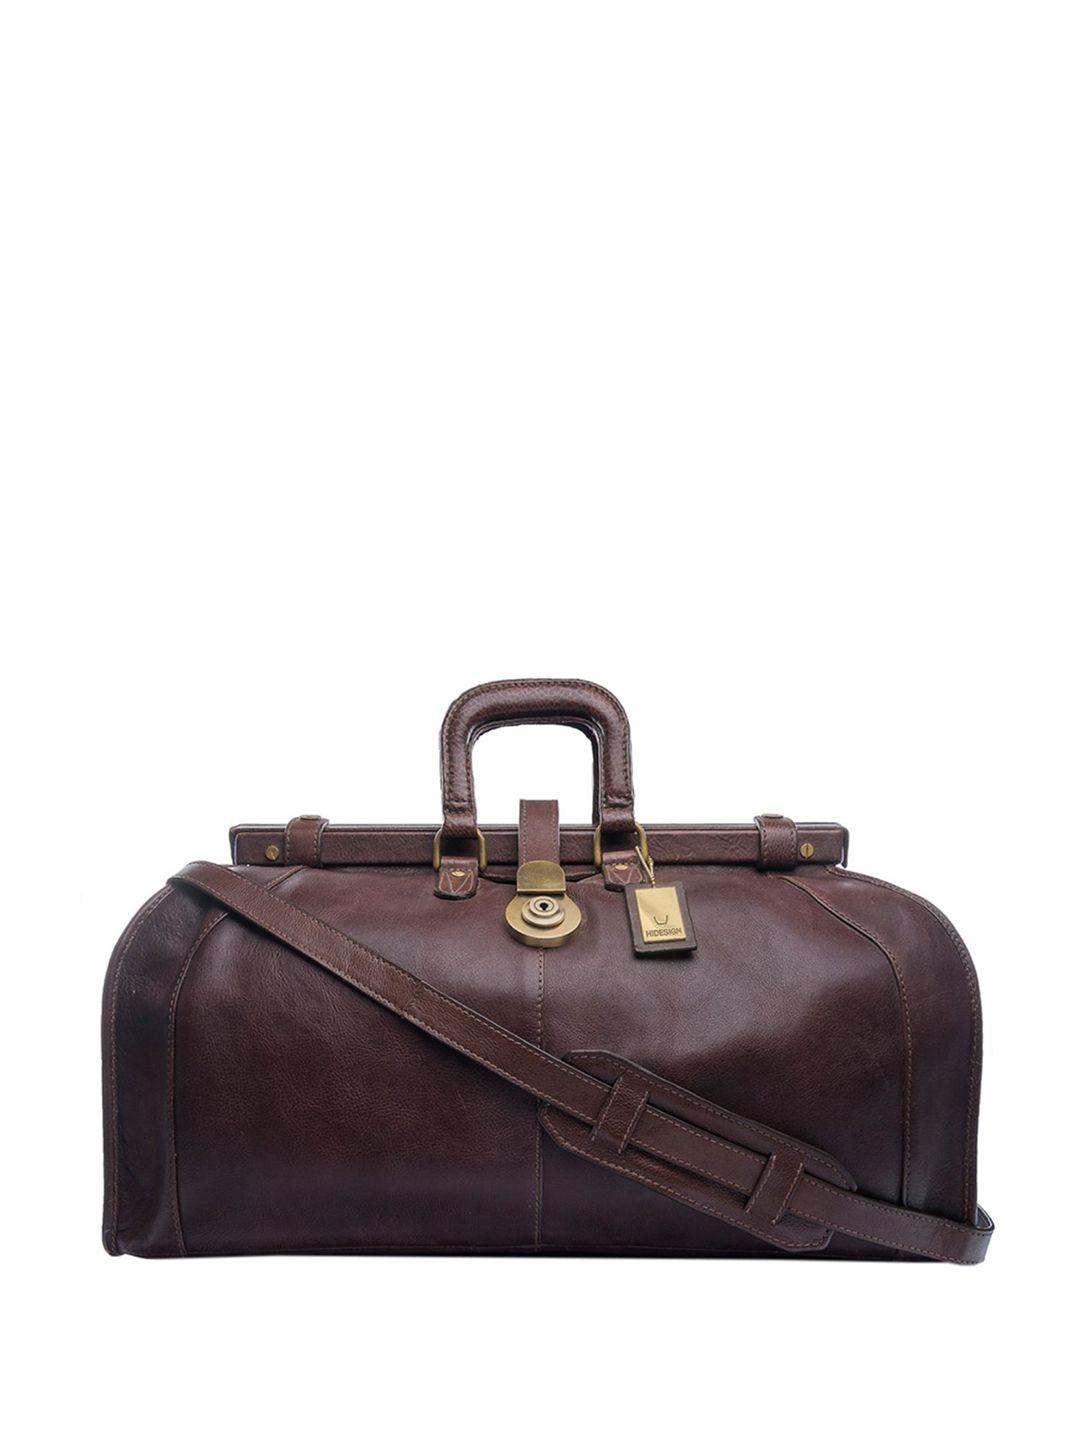 hidesign-men-brown-solid-leather-safari-soweto-duffel-bag